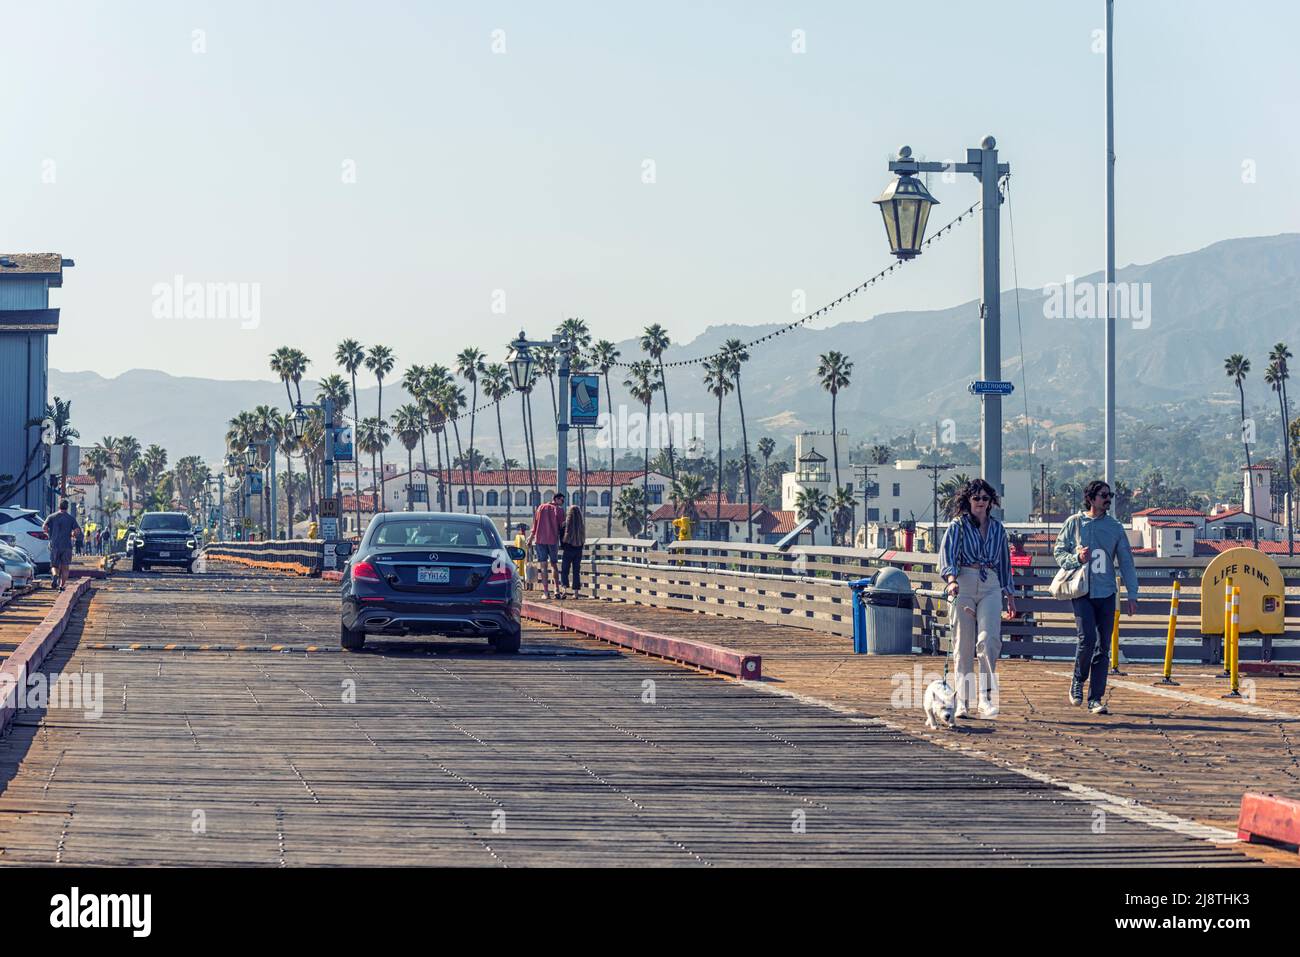 An April afternoon at Stearns Wharf. Santa Barbara, California, USA. Stock Photo